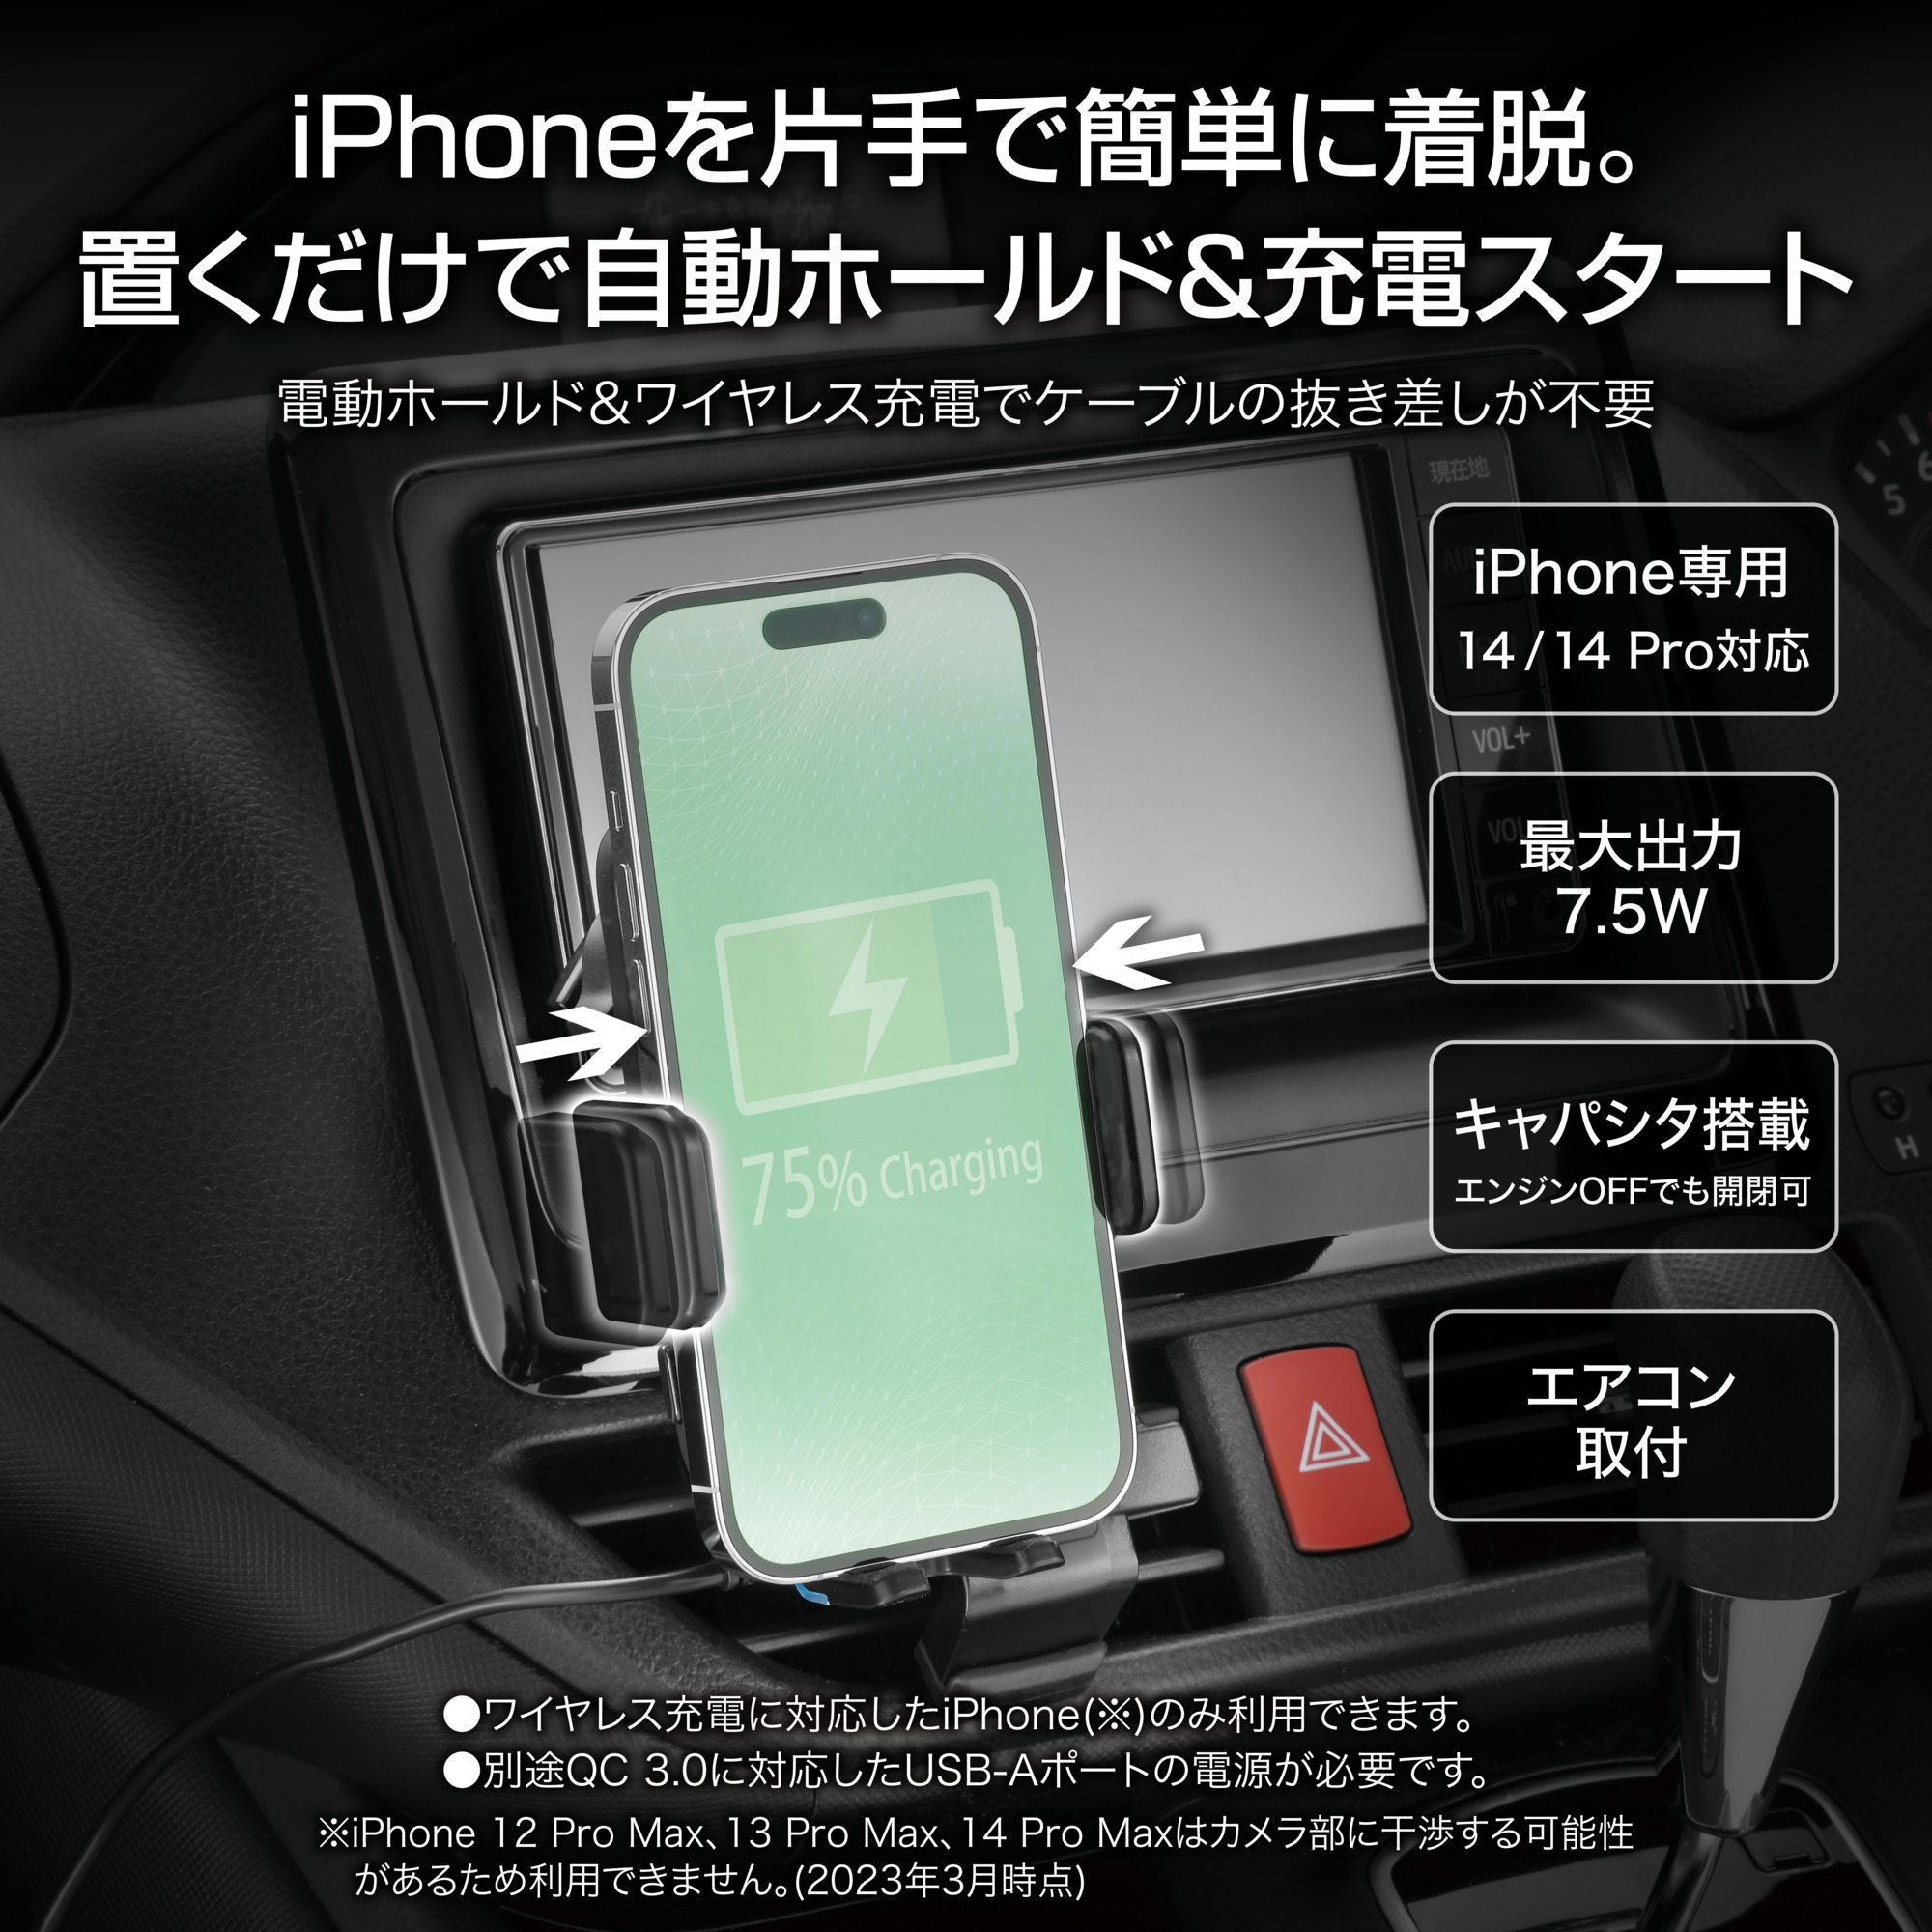 スマホホルダー 自動開閉 車 スマートフォンホルダー SA504 iPhone専用 電動開閉 ワイヤレス充電 スマホルダー エアコン取付  carmate (R80)